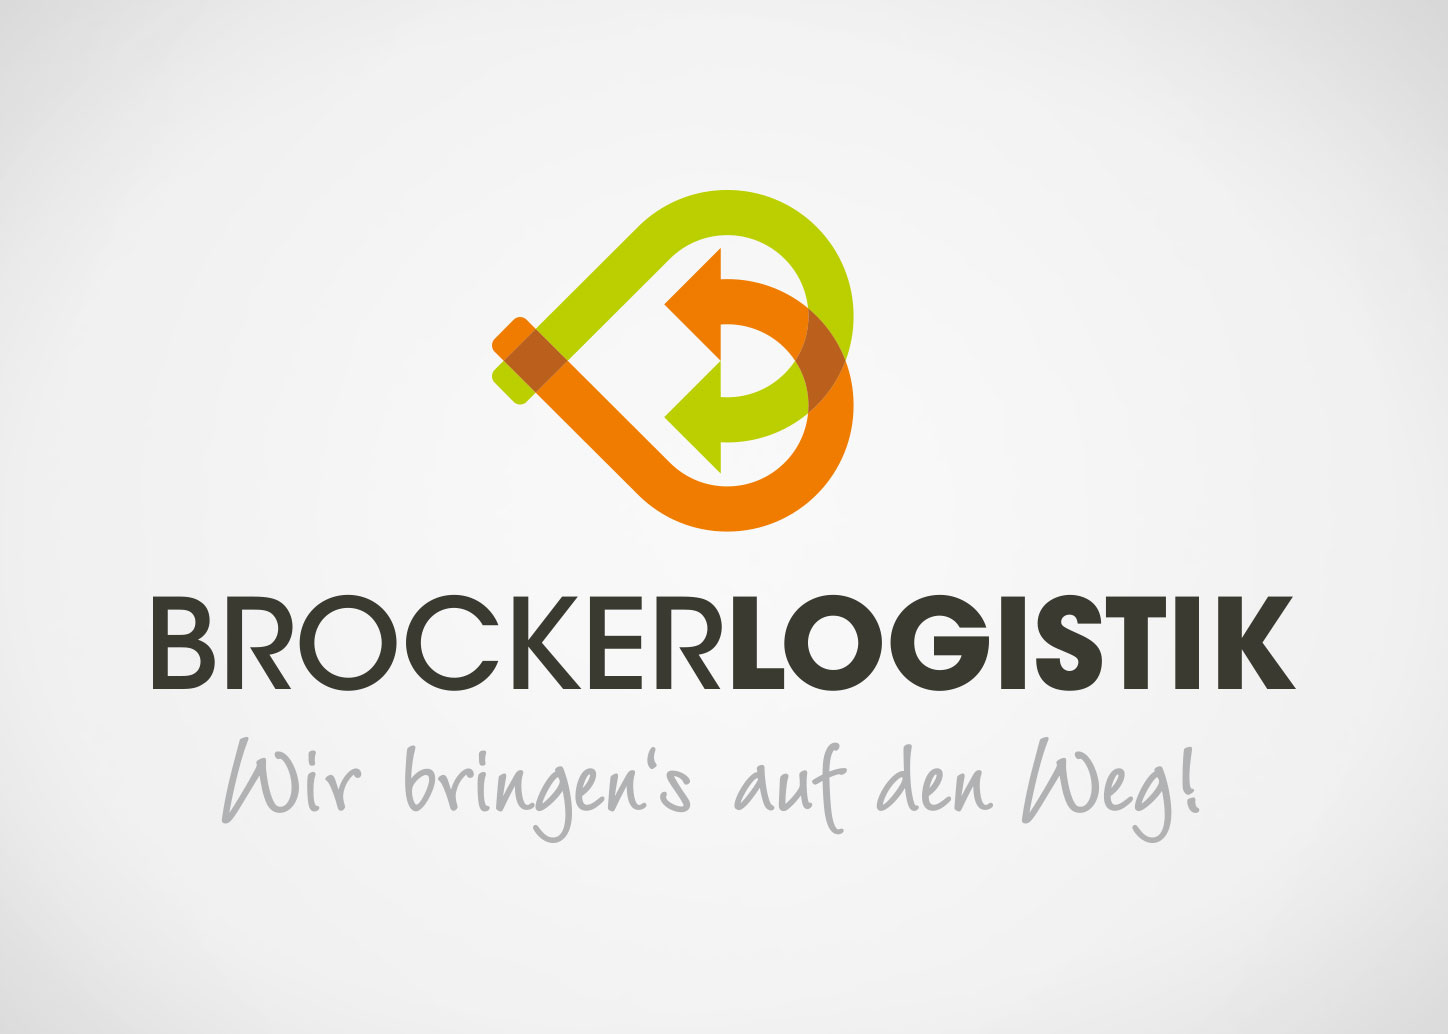 Logoentwicklung und Design für Brocker Logistik, ein professionelles Logistik Unternehmen aus Korschenbroich. Brocker Logistik leistet Kommissionierung, Logistik, Lagerung und Handel mit Obst und Gemüse aus einer Hand.